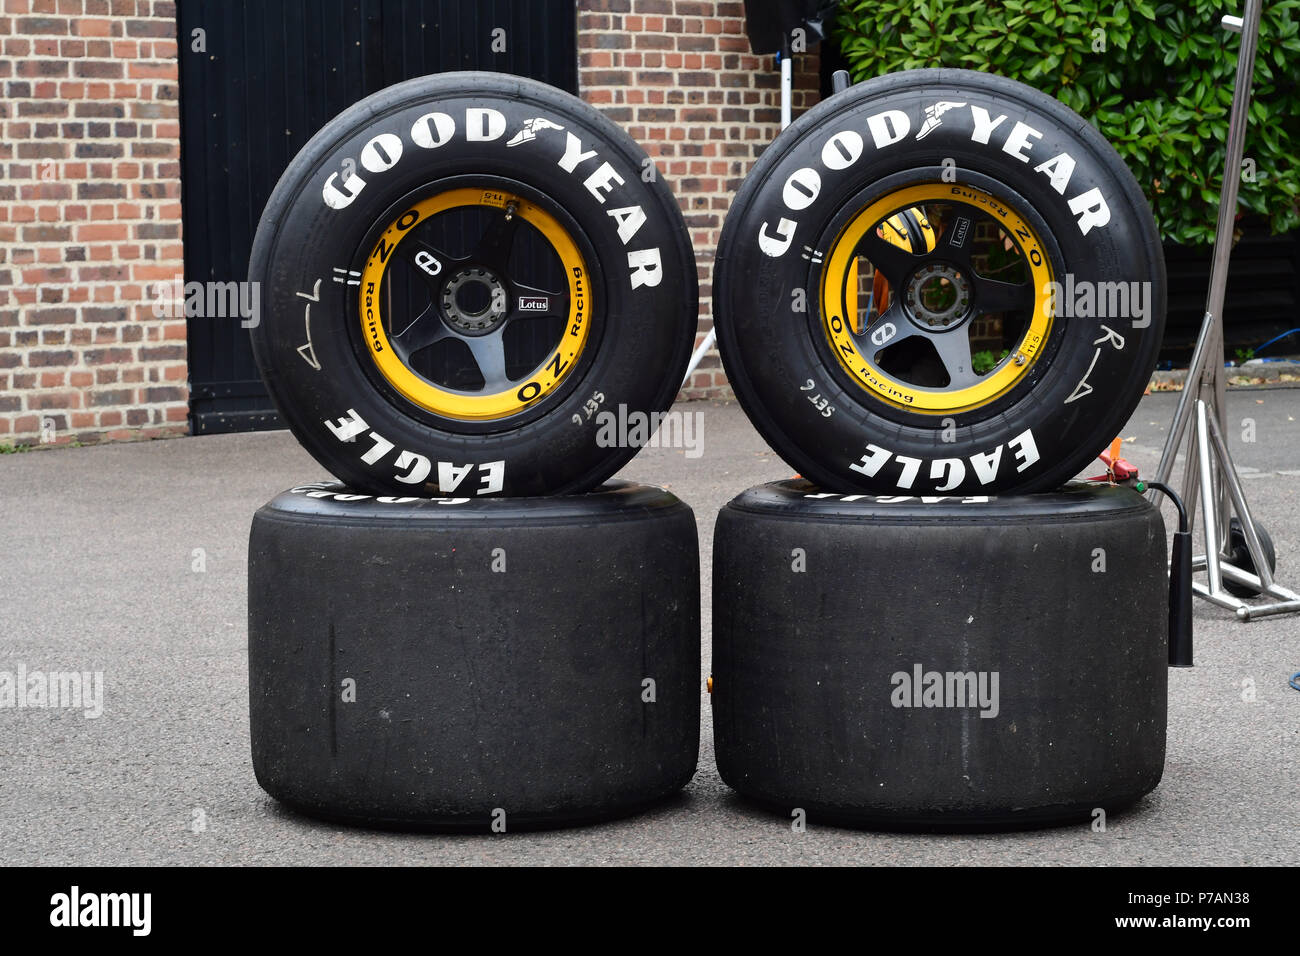 Les pneus Goodyear à l'affichage Grand Prix 2018 ballon tenu au Club de Hurlingham le 4 juillet 2018 à Londres, en Angleterre. Banque D'Images